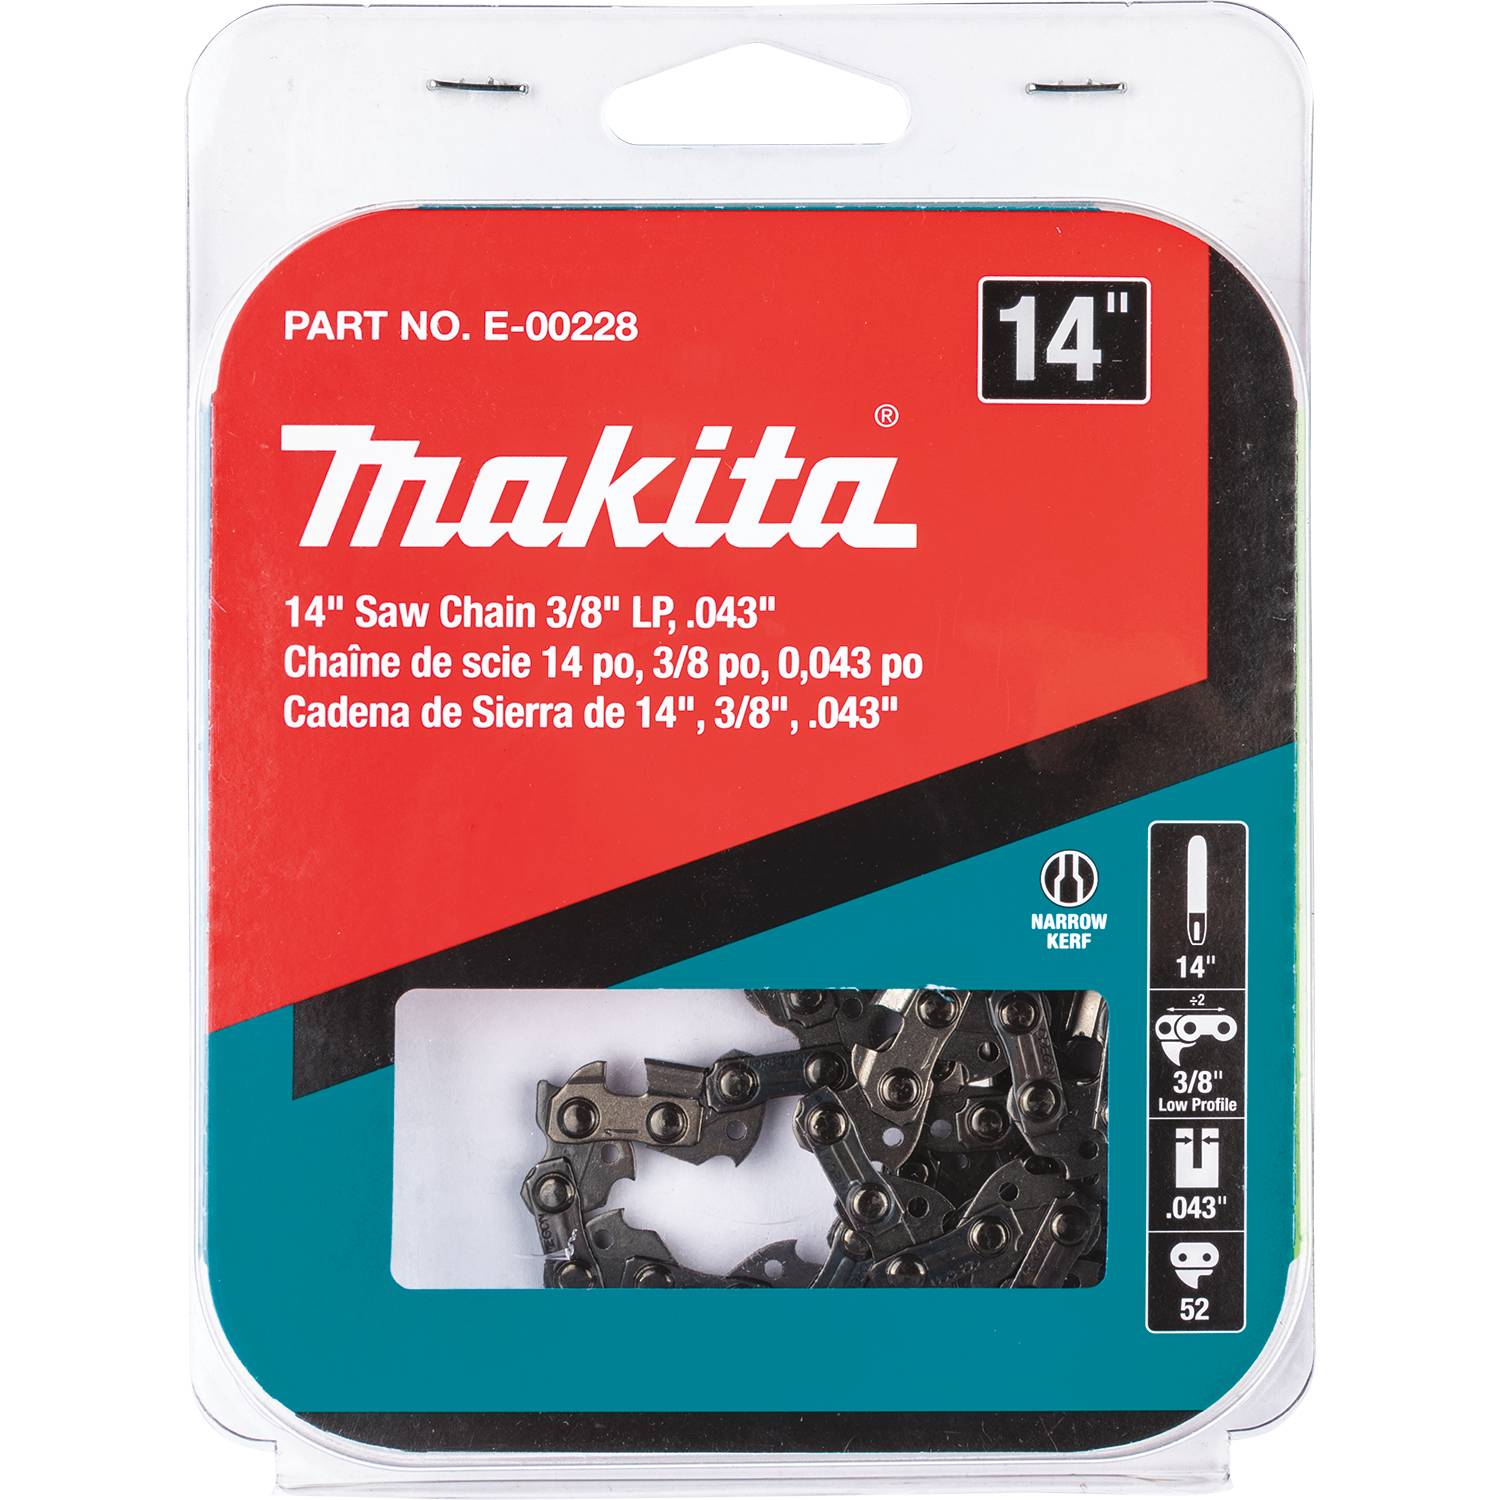 E-00228 Makita 14' Saw Chain, 3/8' LP, .043' 1